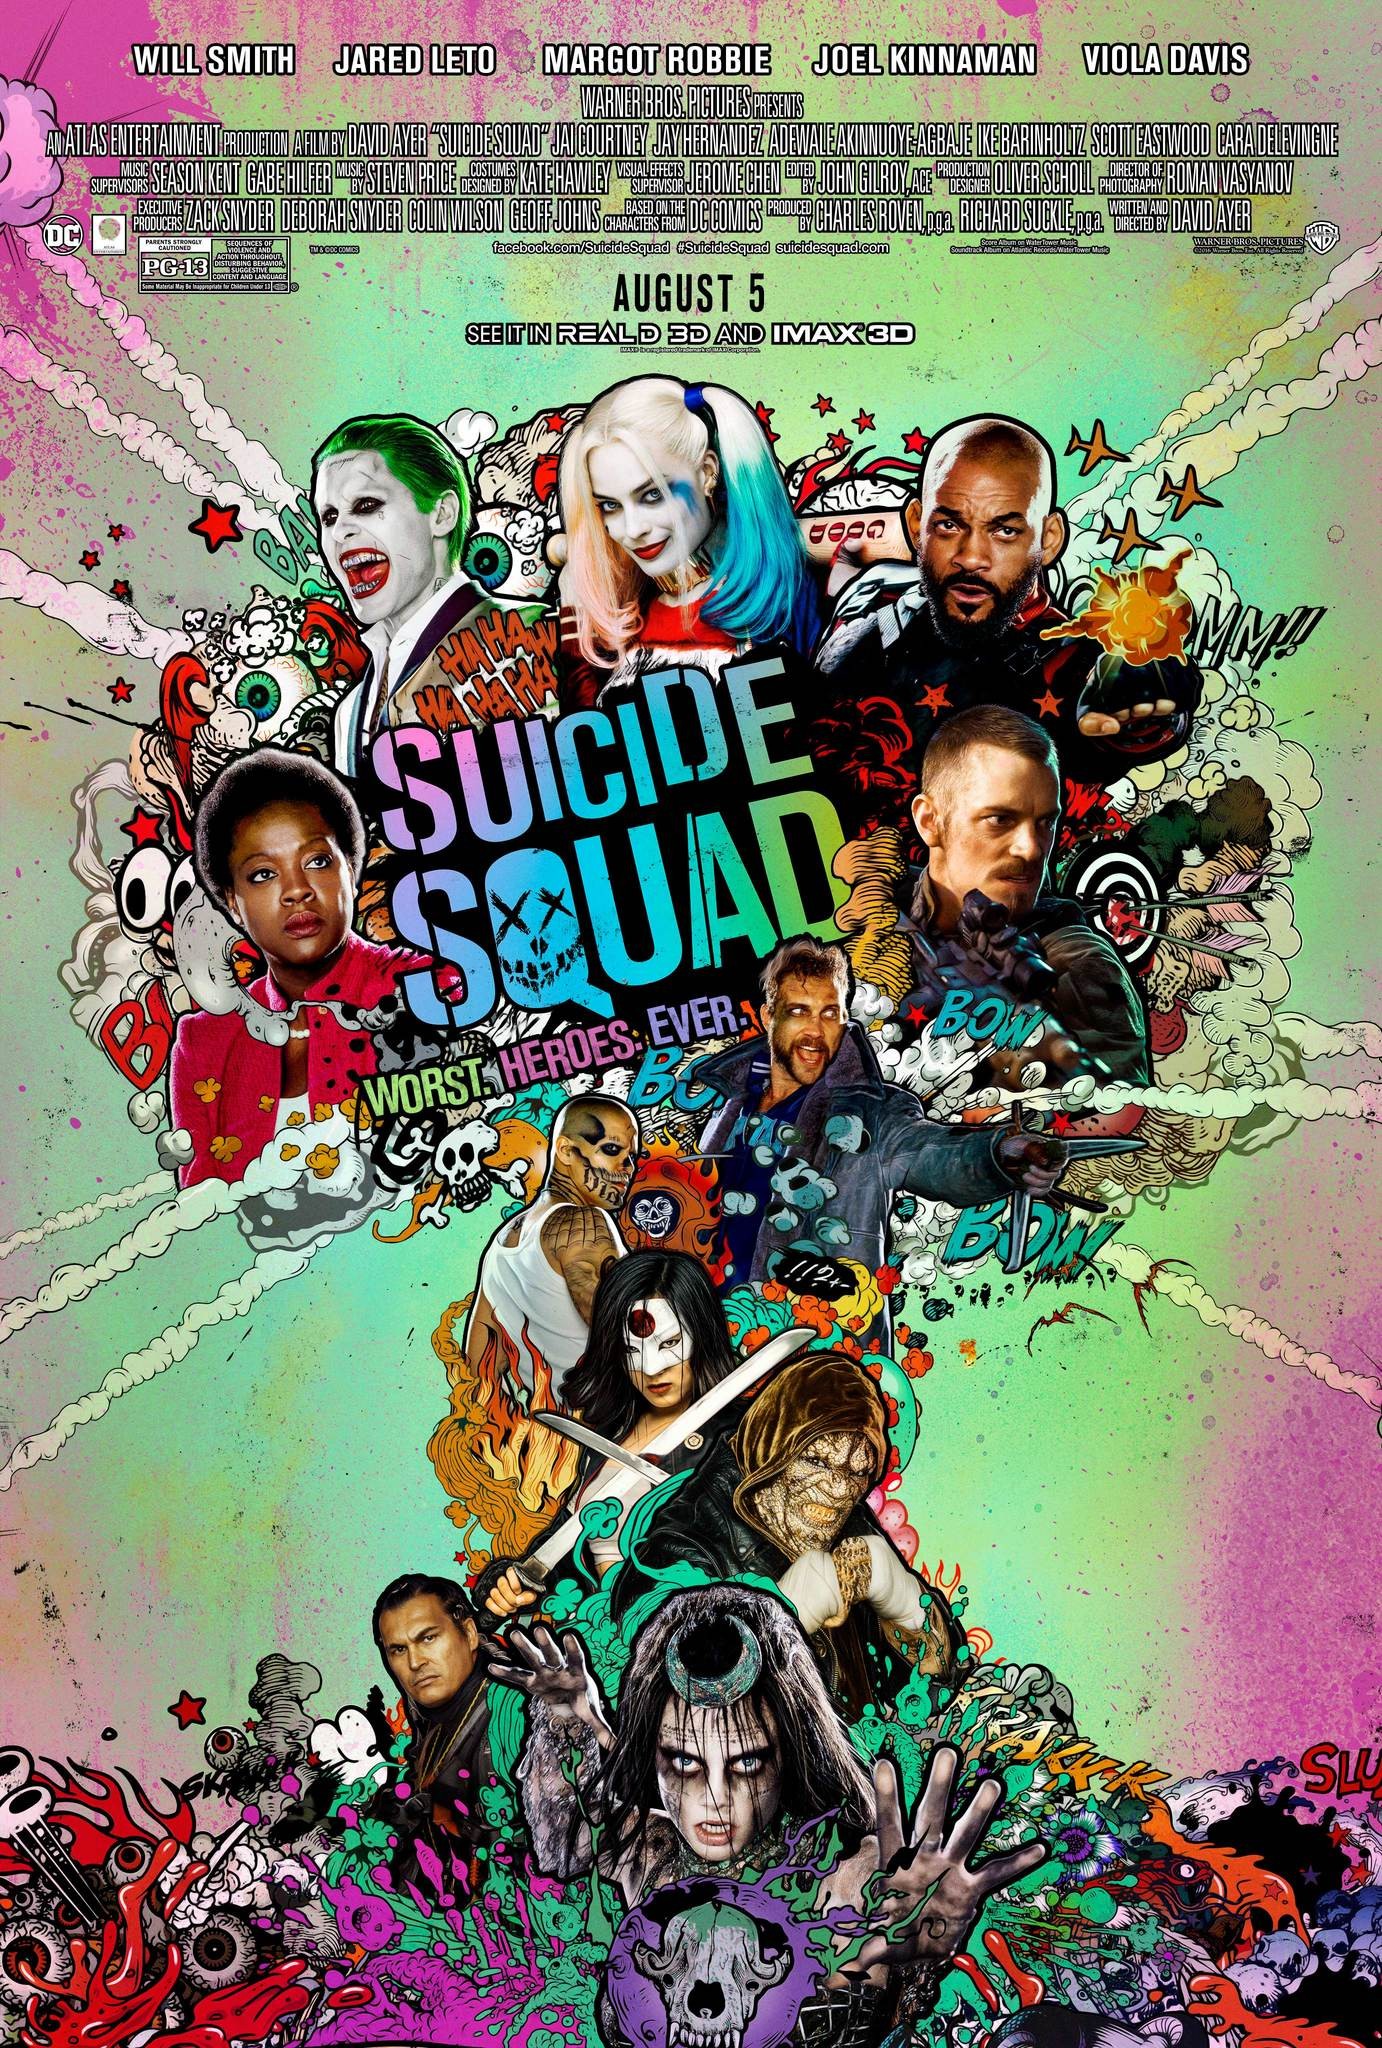 ดูหนังออนไลน์ฟรี Suicide Squad (2016) ทีมพลีชีพ มหาวายร้าย